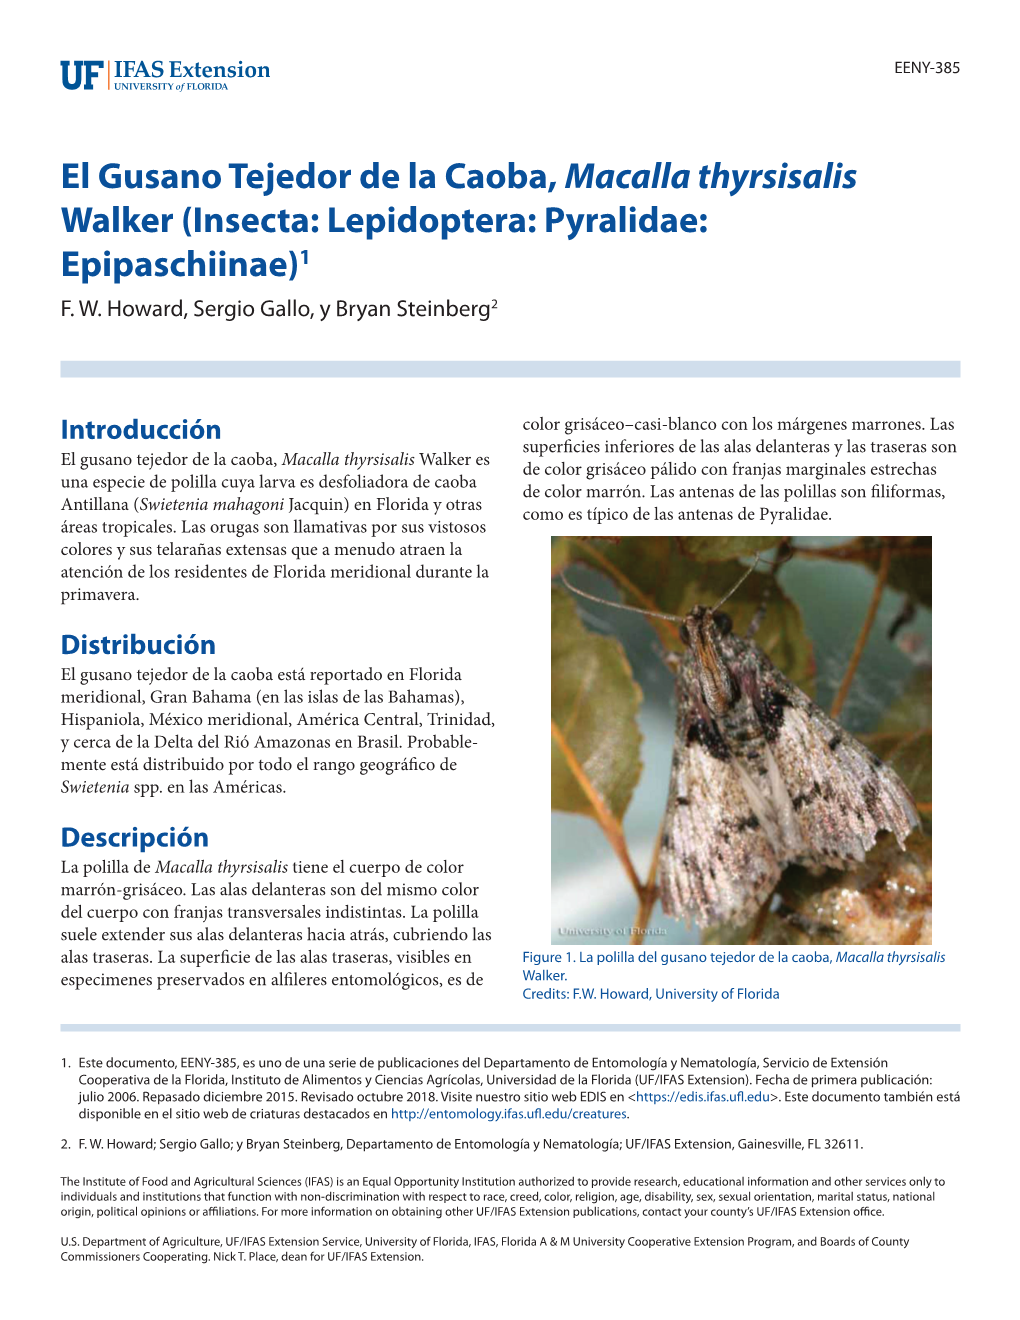 El Gusano Tejedor De La Caoba, Macalla Thyrsisalis Walker (Insecta: Lepidoptera: Pyralidae: Epipaschiinae)1 F